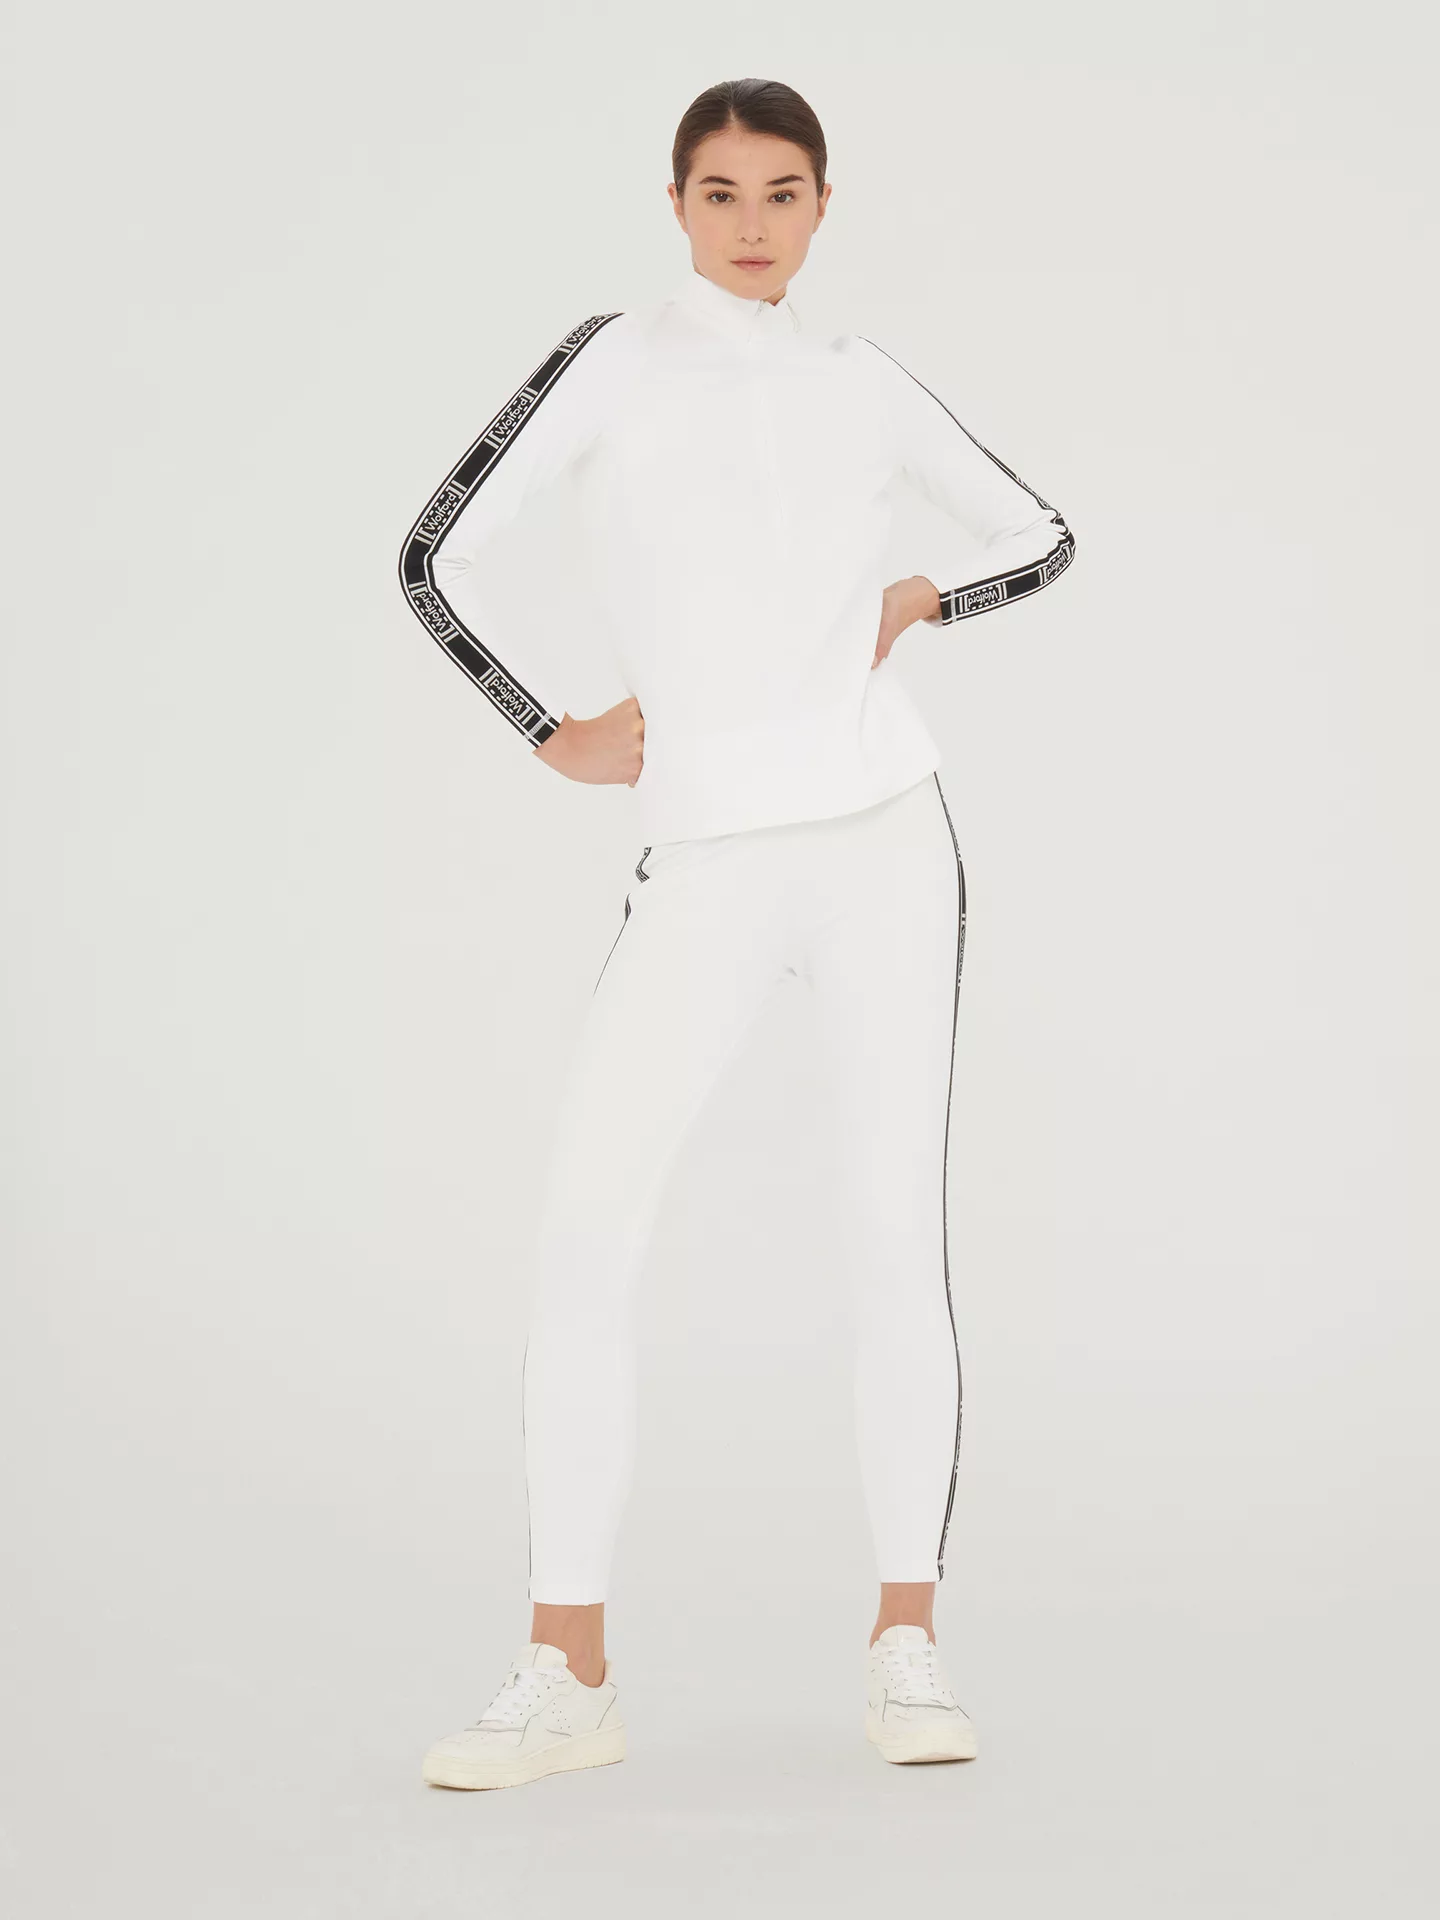 Wolford - Thermal Top Long Sleeves, Frau, white, Größe: S günstig online kaufen